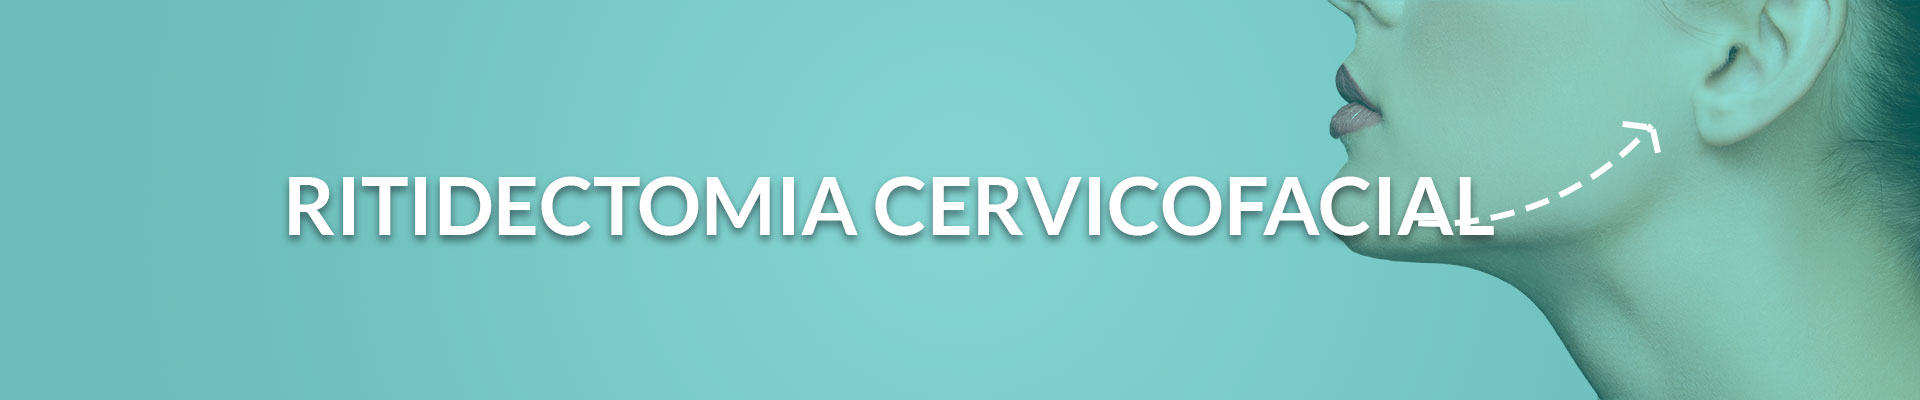 ritidectomia cervicofacial